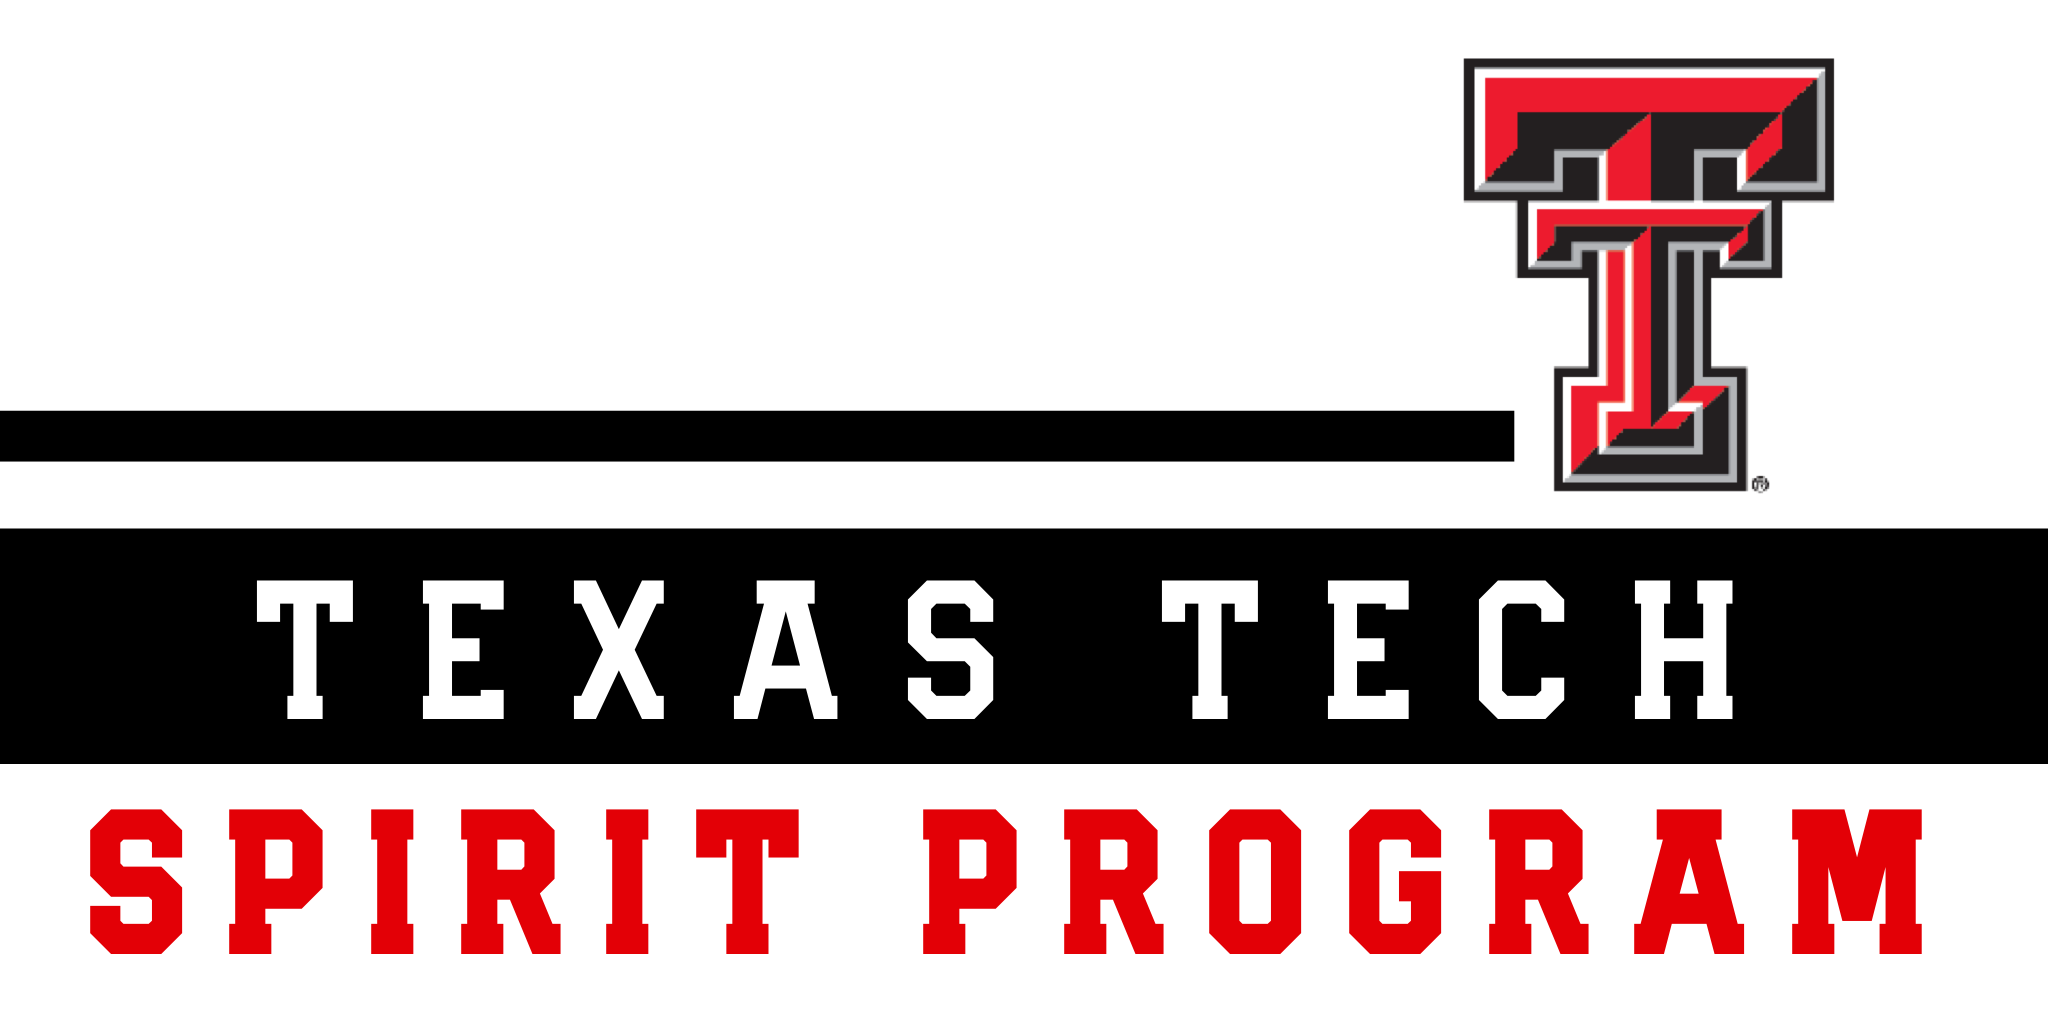 Texas Tech Spirit Program